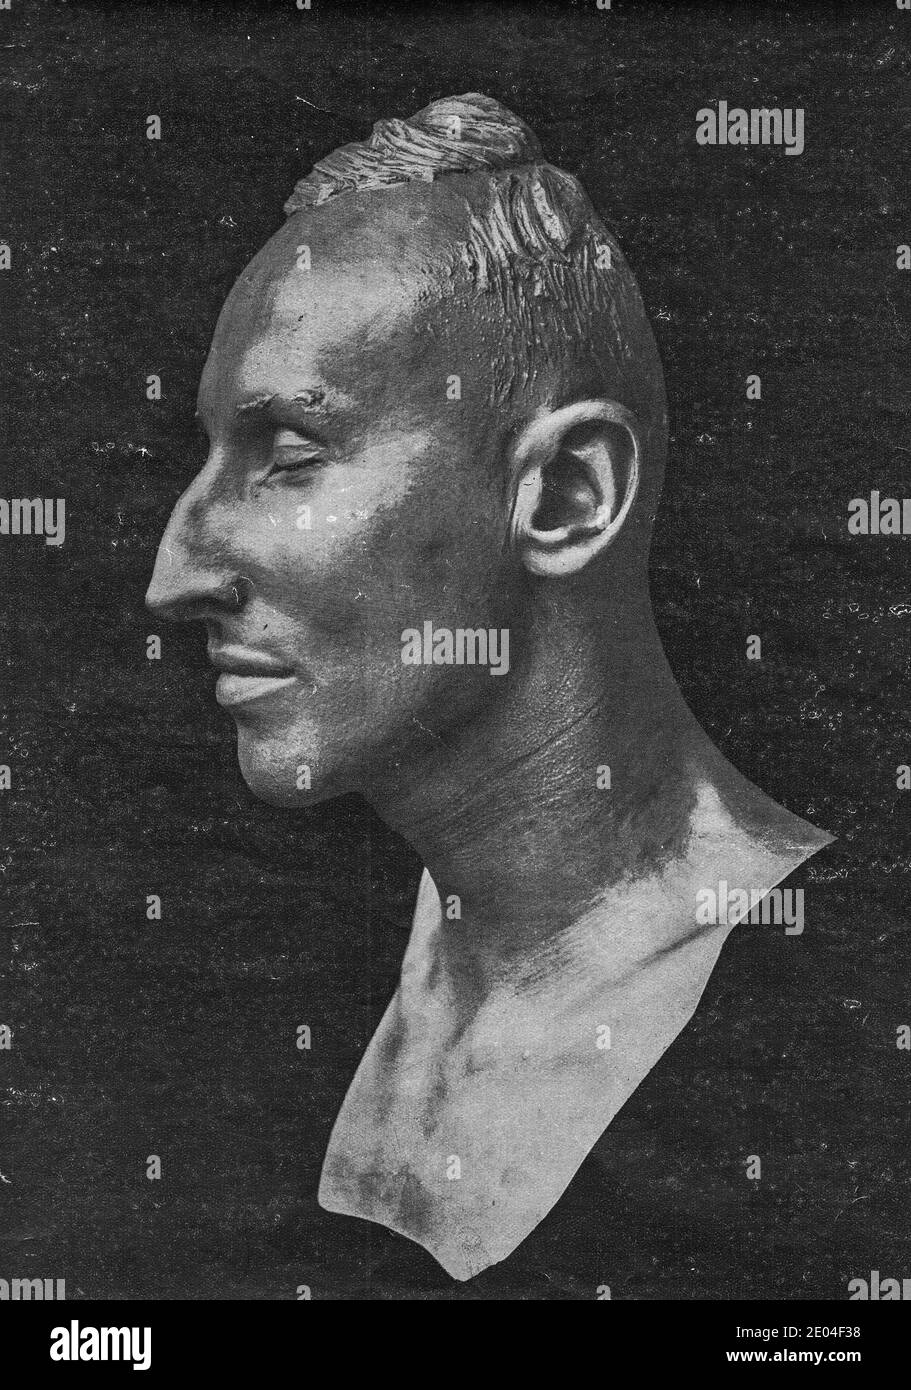 PRAG, PROTEKTORAT BÖHMEN UND MÄHREN - 1942: Totenmaske von Reinhard Heydrich, angefertigt von Prof. Franz Rotter (Bildhauer). Stockfoto